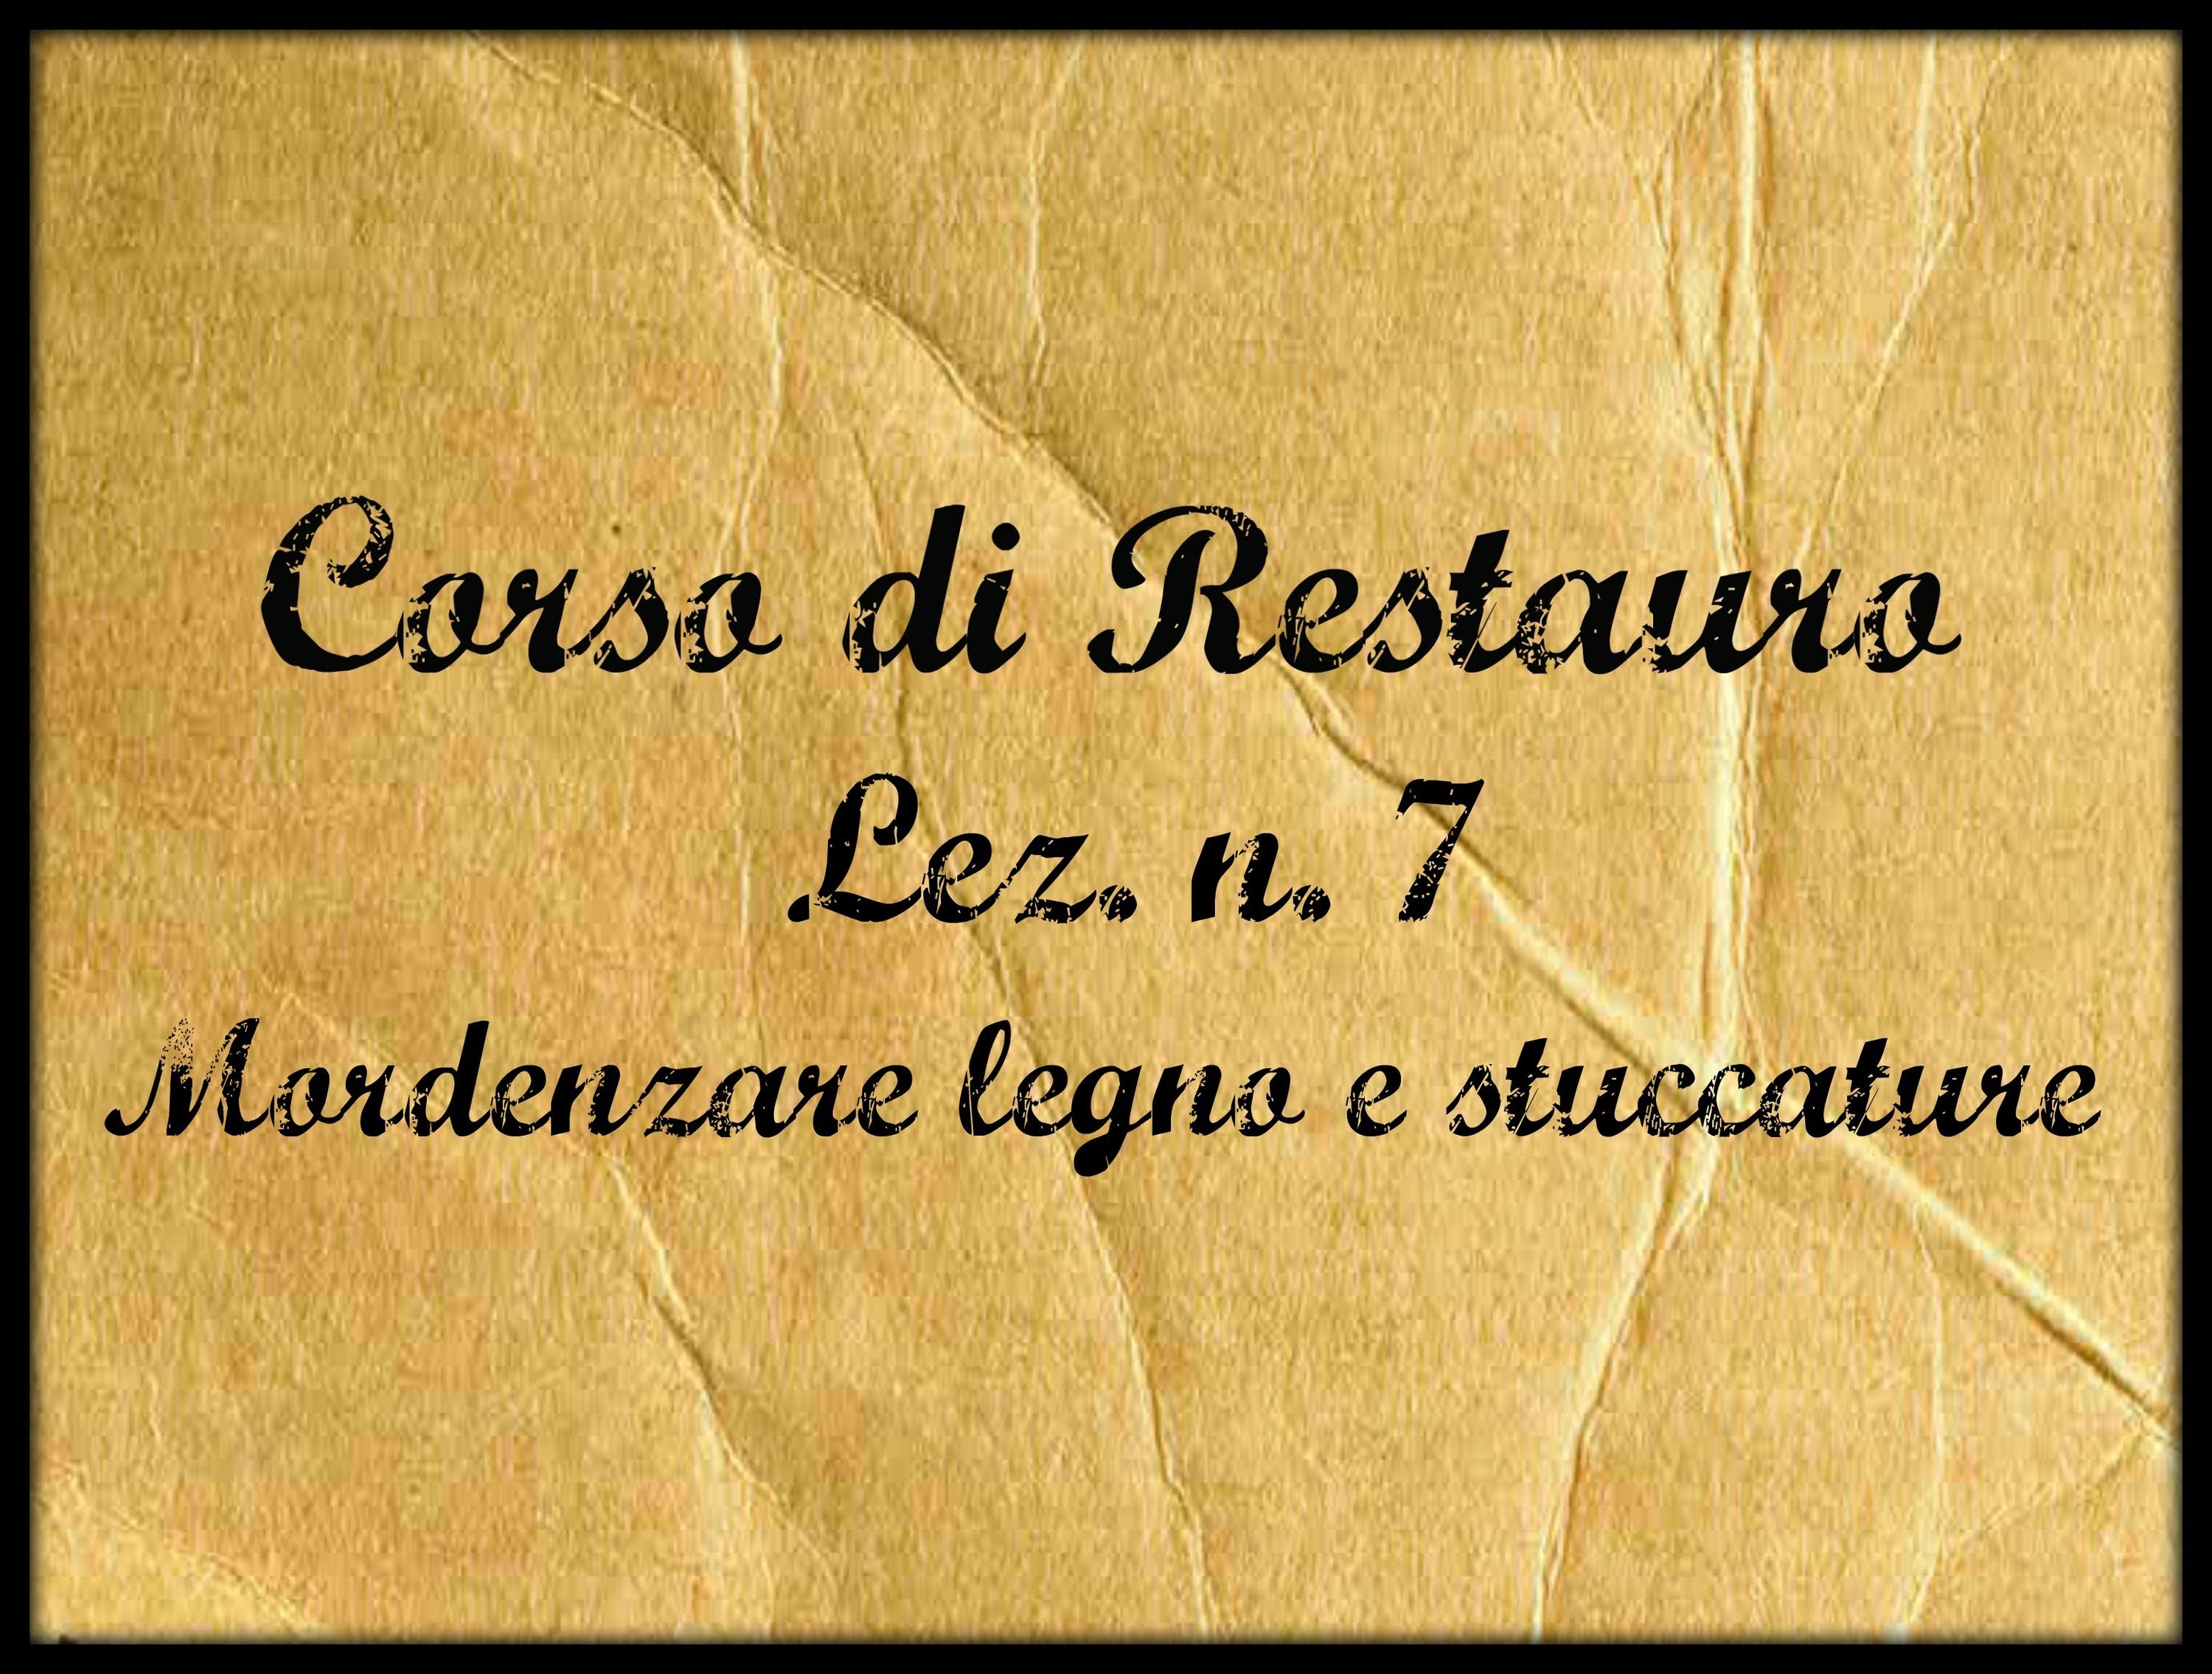 Corso di restauro,Lez. n. 7 (La mordenzatura del legno e delle stuccature) -Arte per Te-